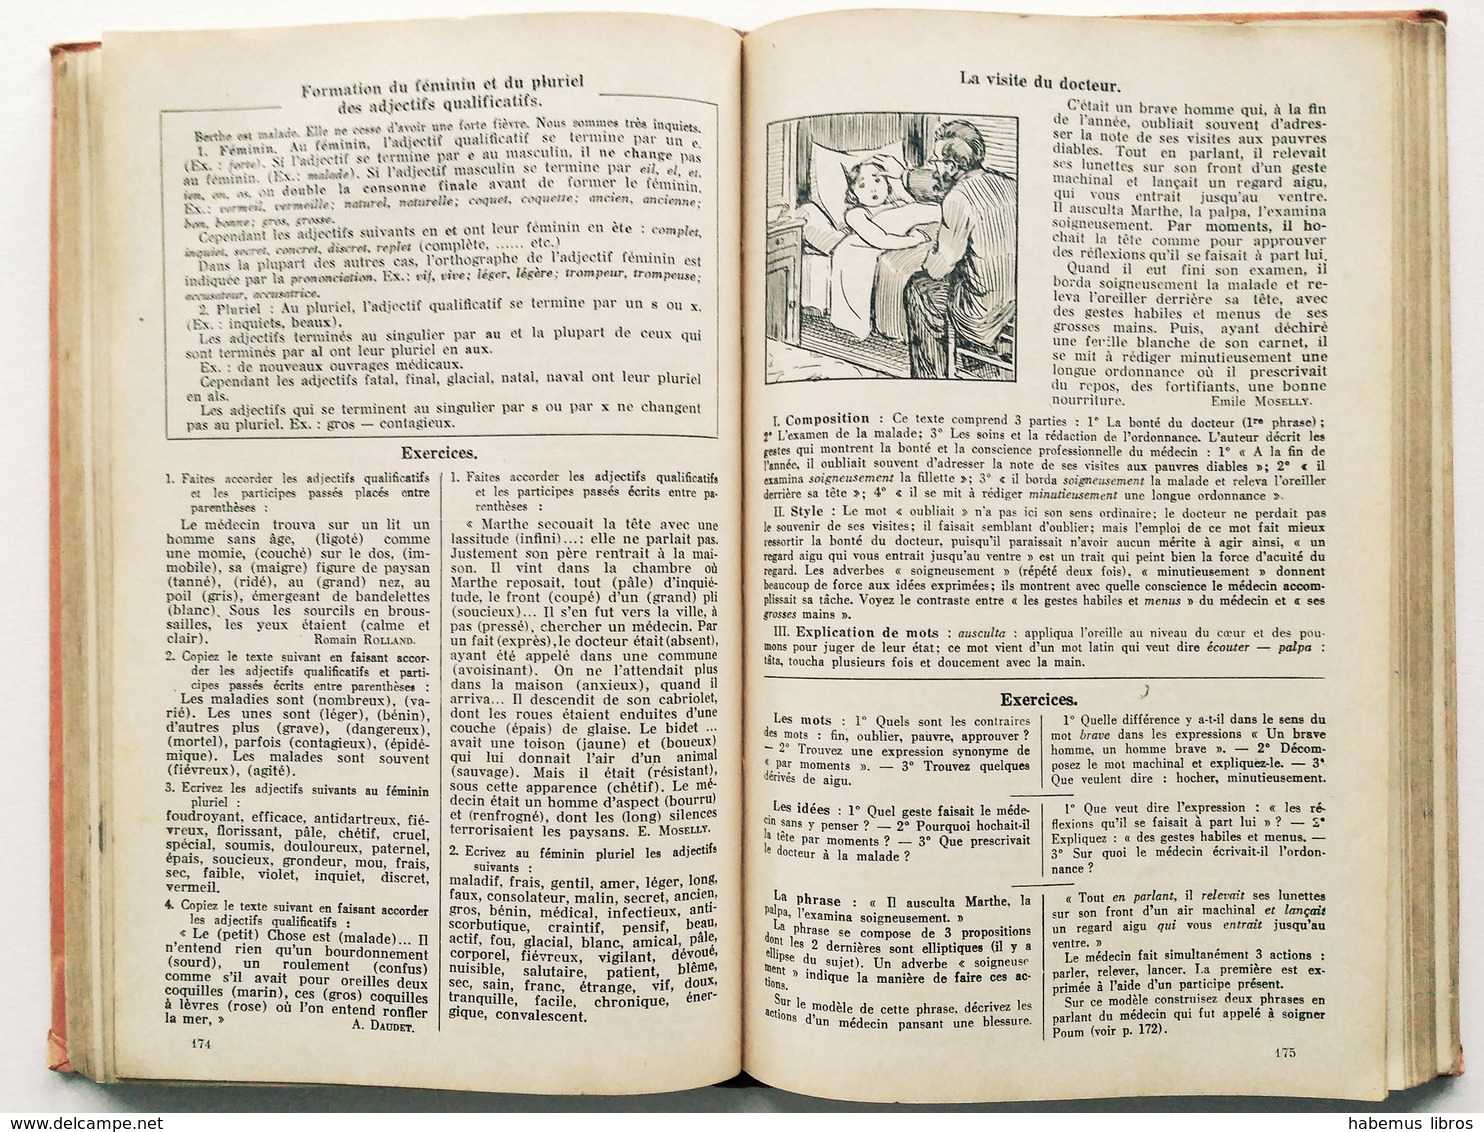 Le Livre De Français / Louis Bourgaux. - 3ème édition. - Bruxelles : A. De Boeck, 1939 - 12-18 Ans